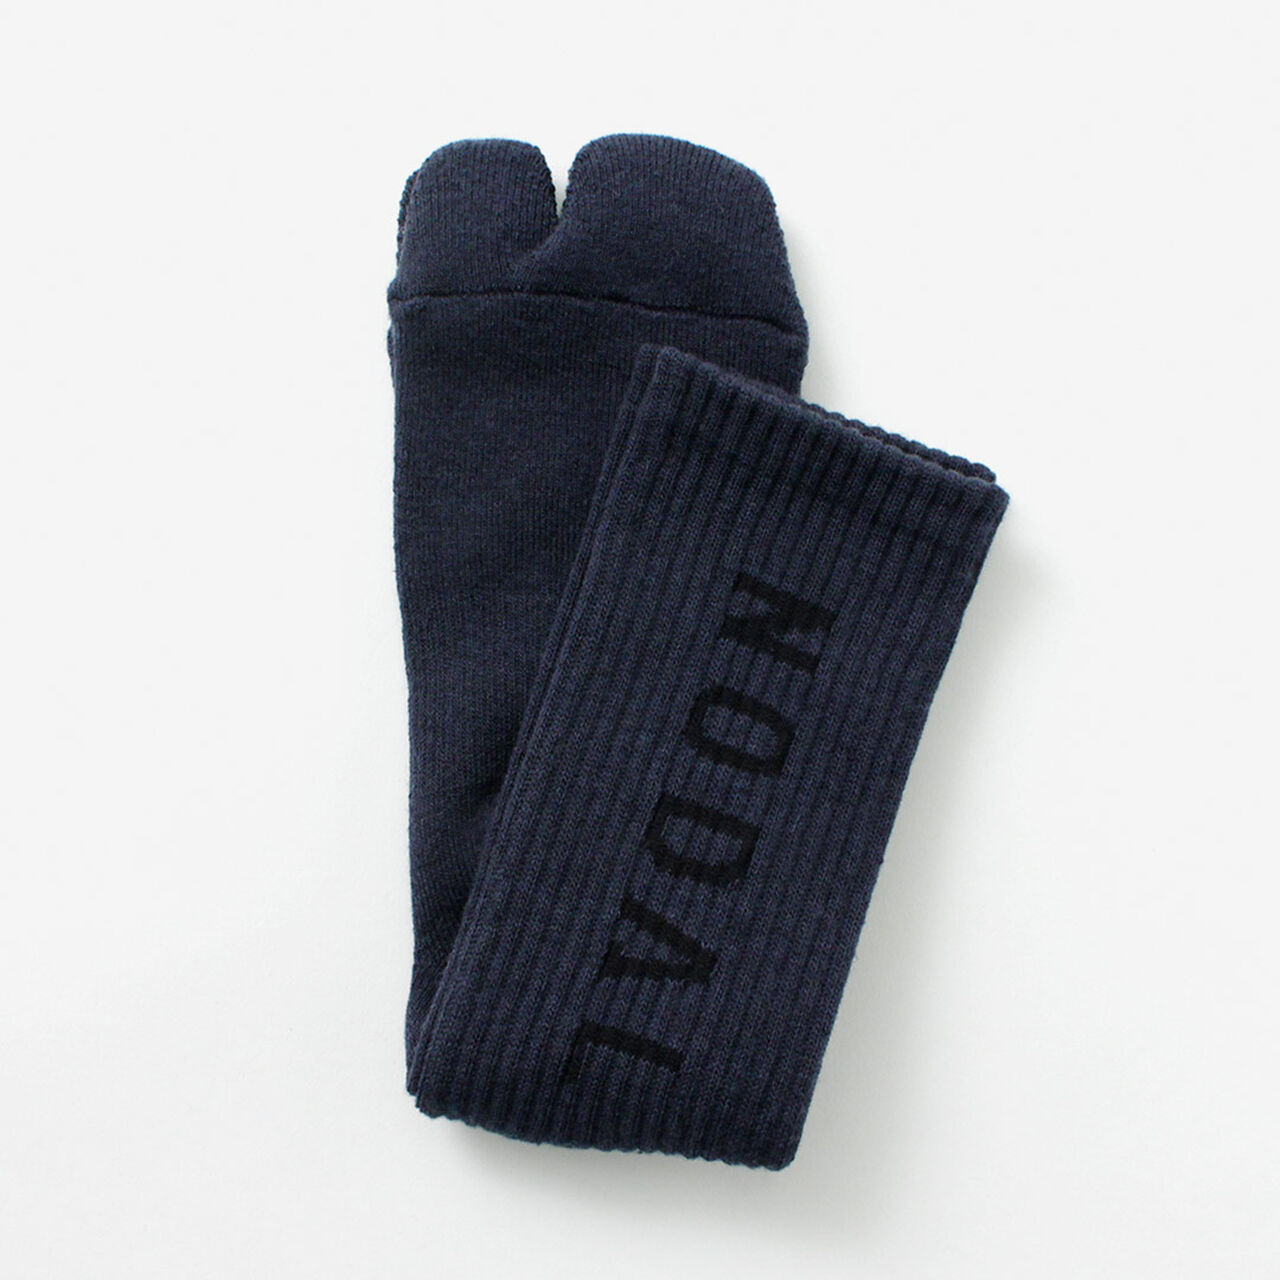 NODAL Logo Socks,Navy, large image number 0